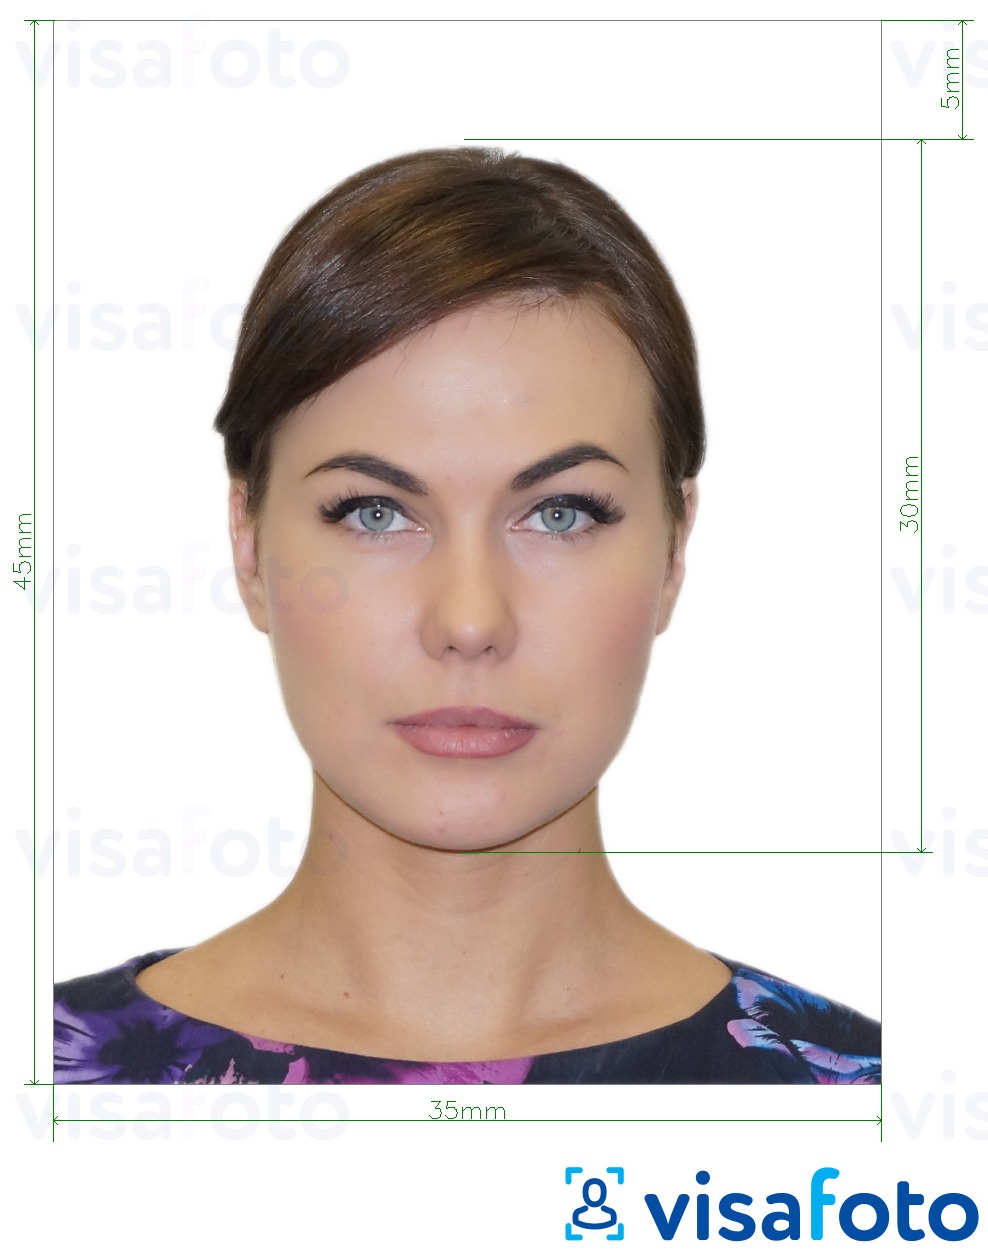 Exemple de foto per a Rússia visa a través de VFS Global 35x45 mm amb la mida exacta especificada